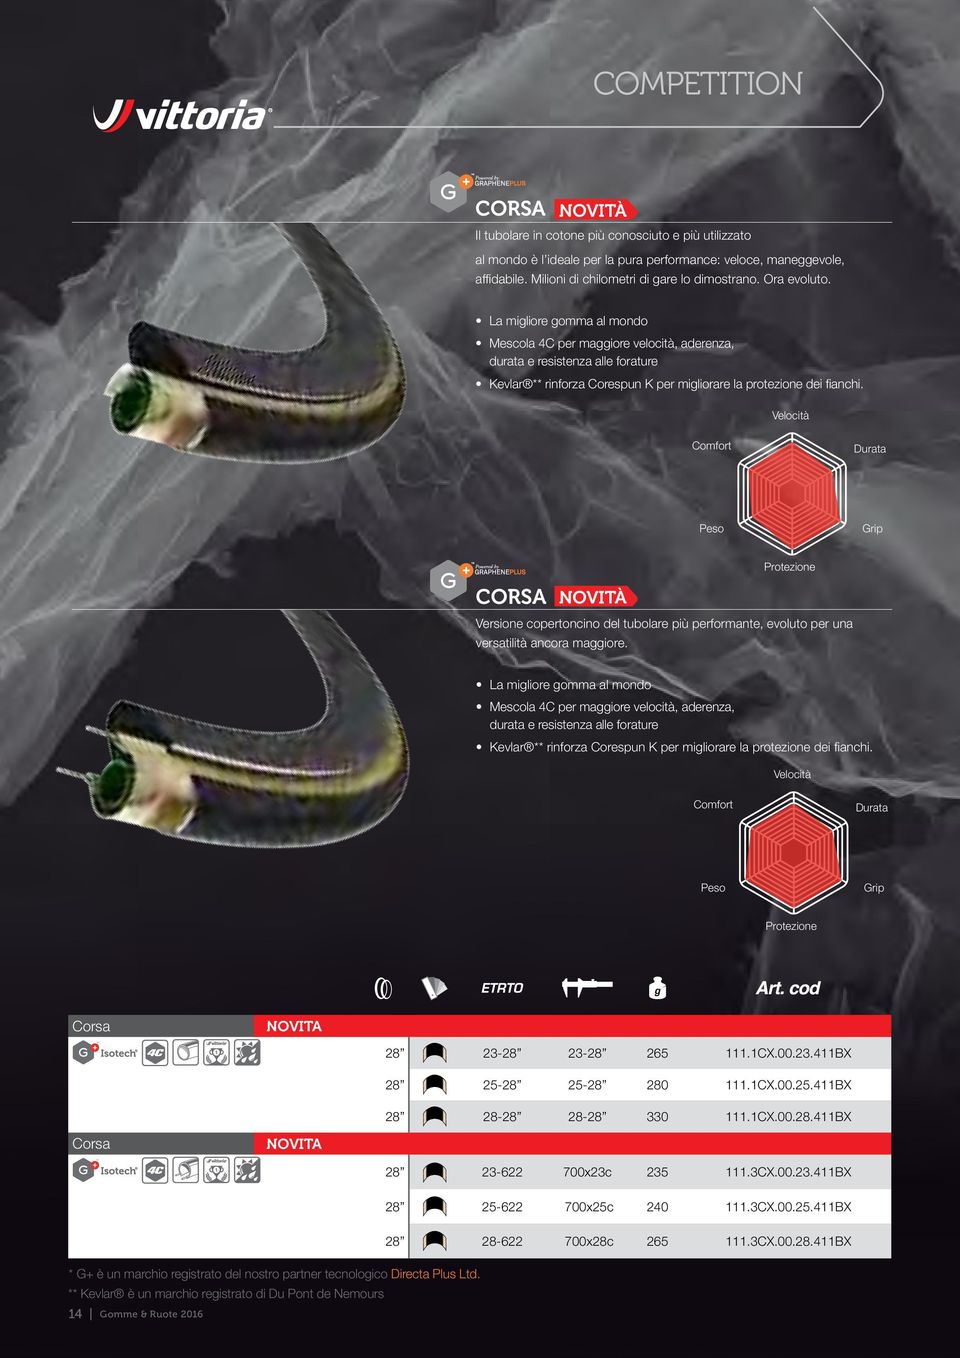 La migliore gomma al mondo Mescola 4C per maggiore velocità, aderenza, durata e resistenza alle forature Kevlar ** rinforza Corespun K per migliorare la protezione dei fianchi.